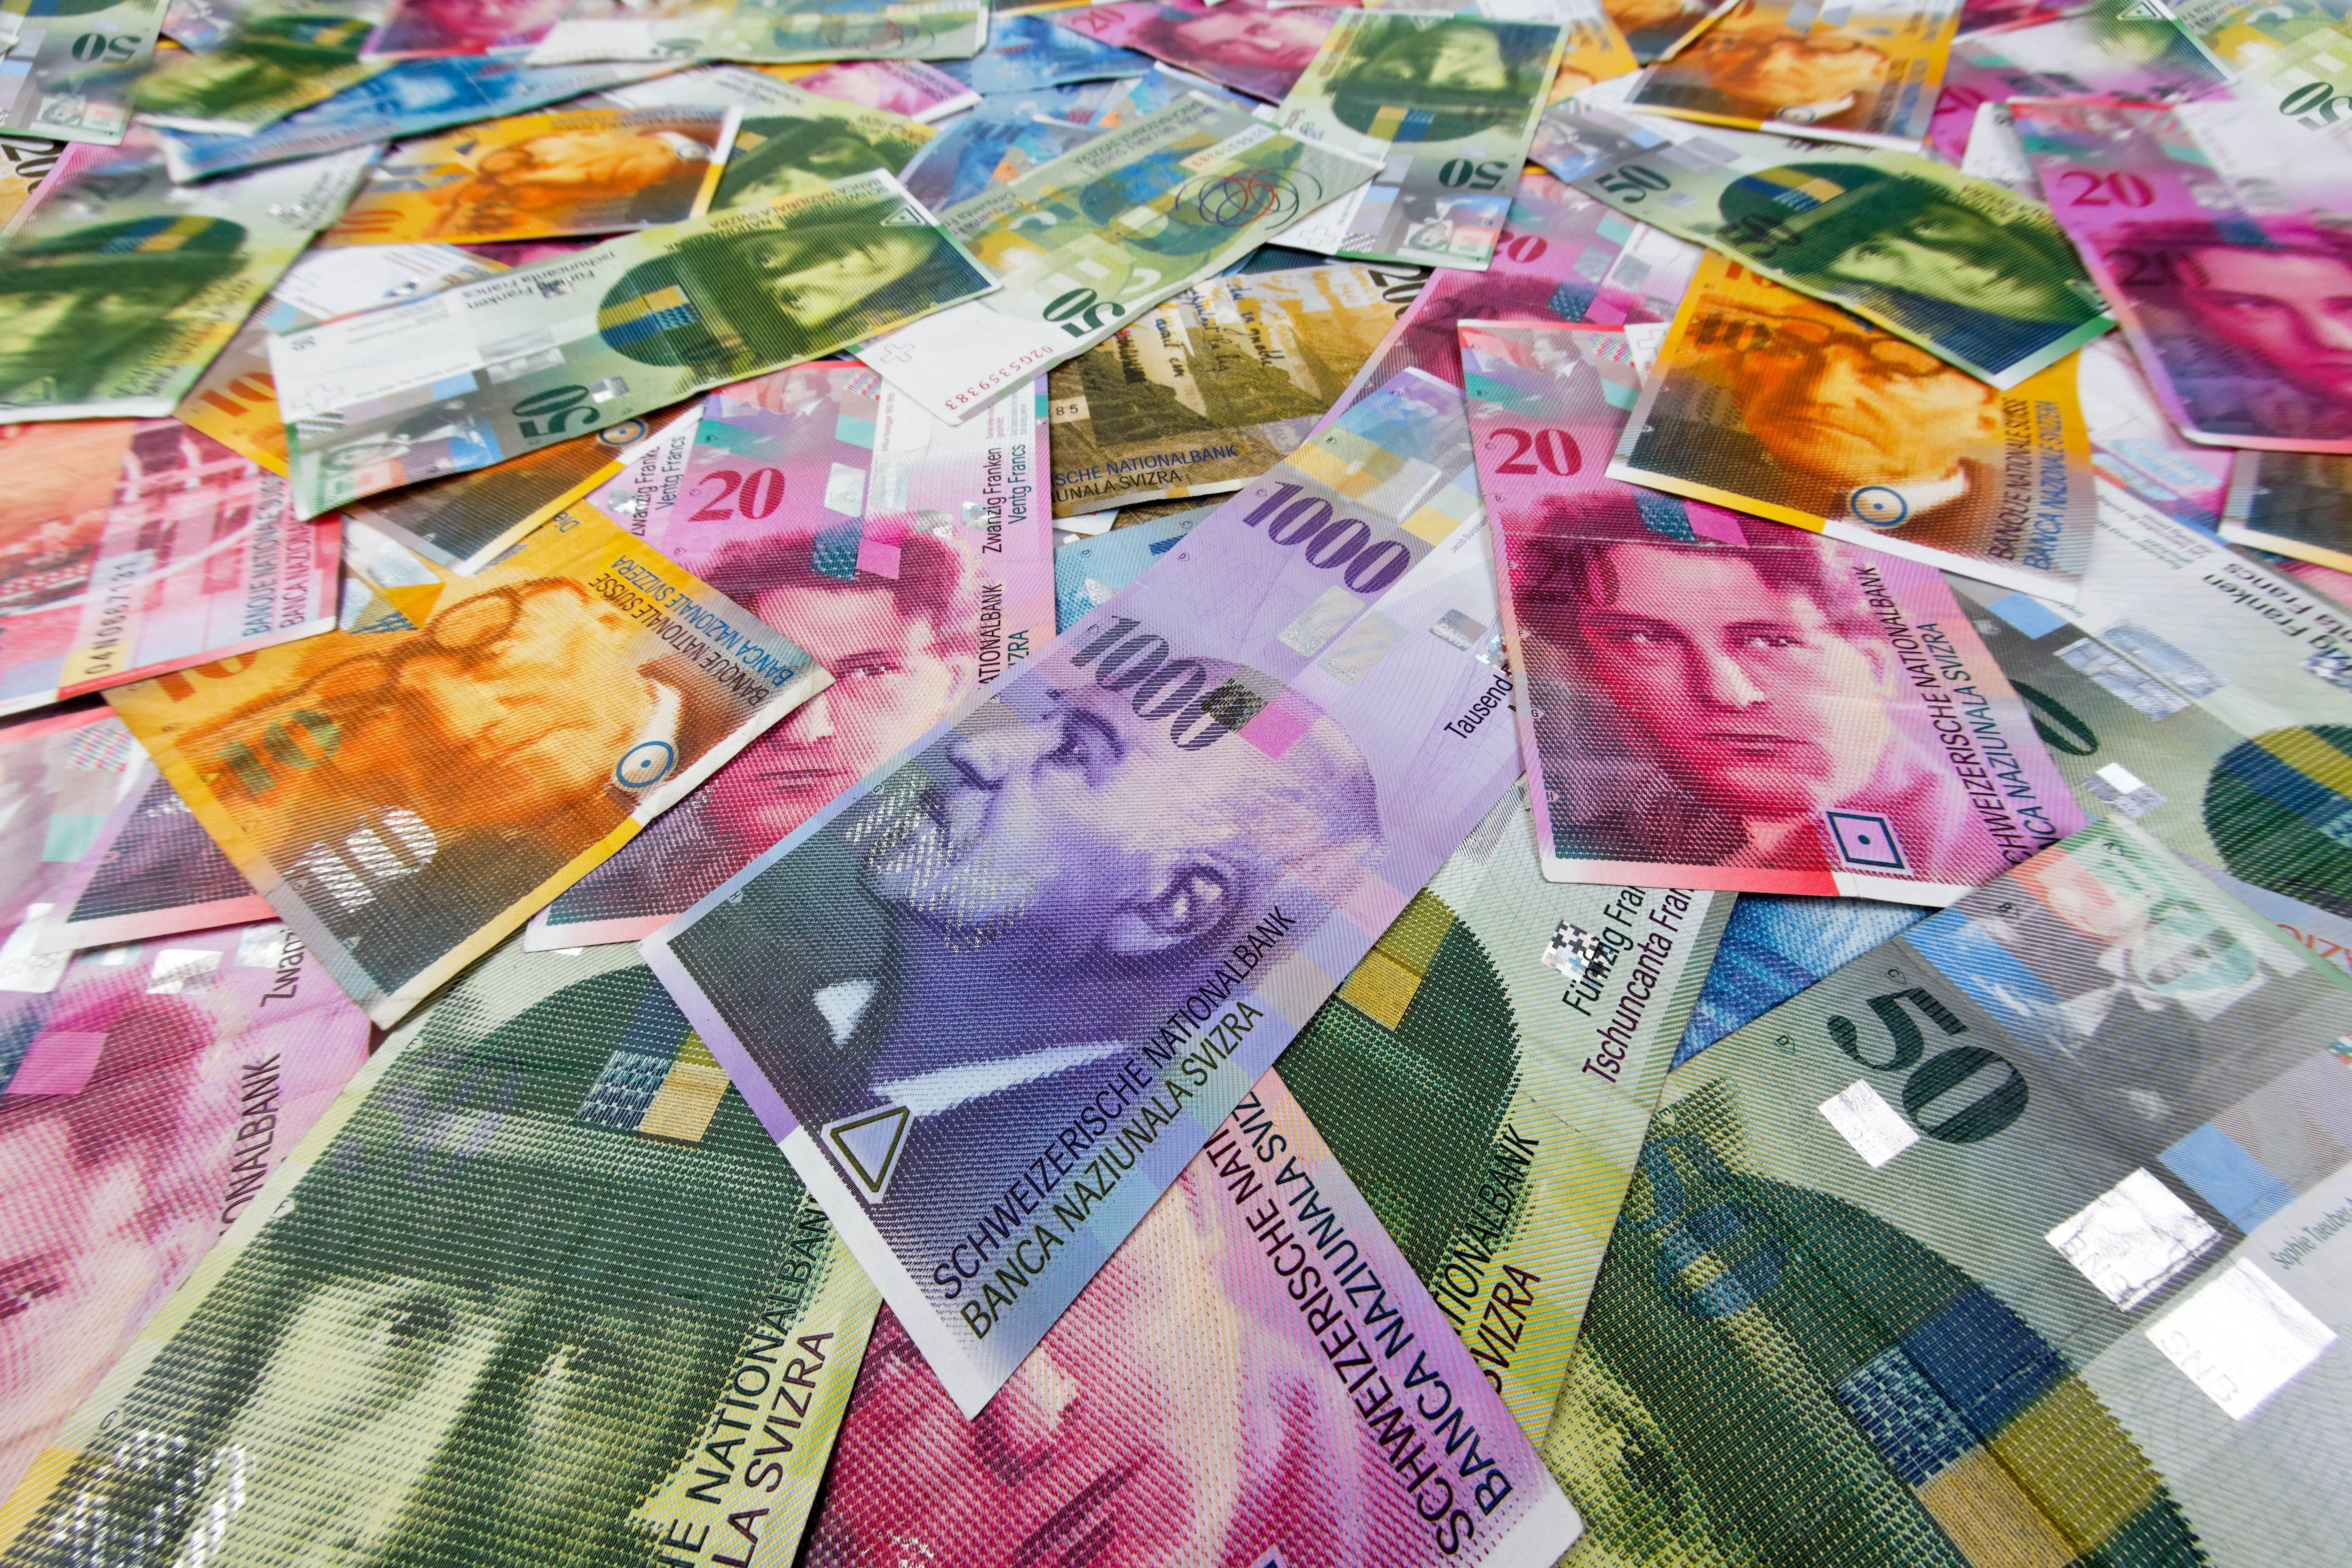 (GERMANY OUT) Schweizer Franken, Geld und W?hrung der Schweiz  (Photo by Wodicka/ullstein bild via Getty Images)